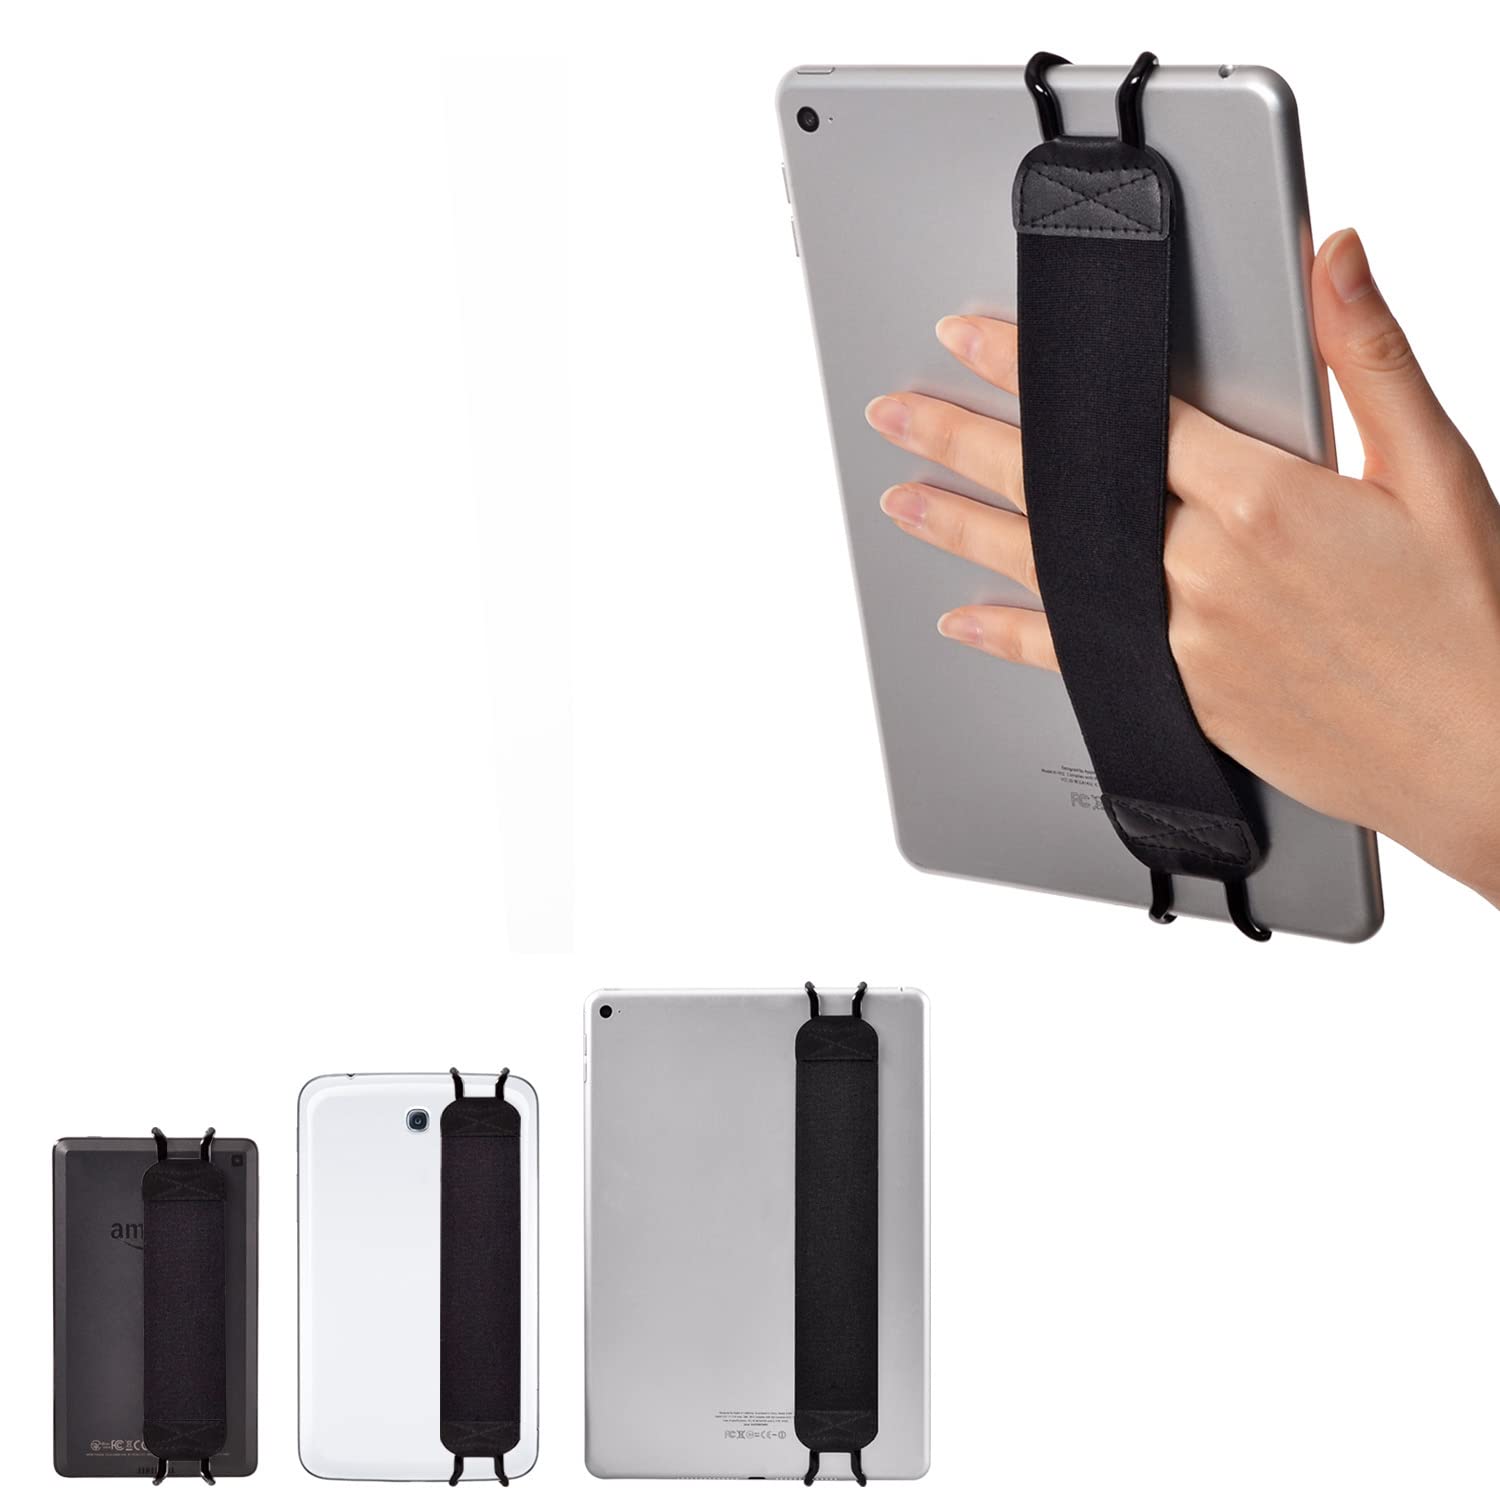 TFY Sicherheit Handschlaufe Halter für Tablets, iPad, E – Apple iPad, iPad 4 (iPad 2 & 3), iPad Air (iPad Air 2), iPad Mini – iPad Pro 24,6 cm – Samsung Galaxy Tab – Google Nexus und Mehr